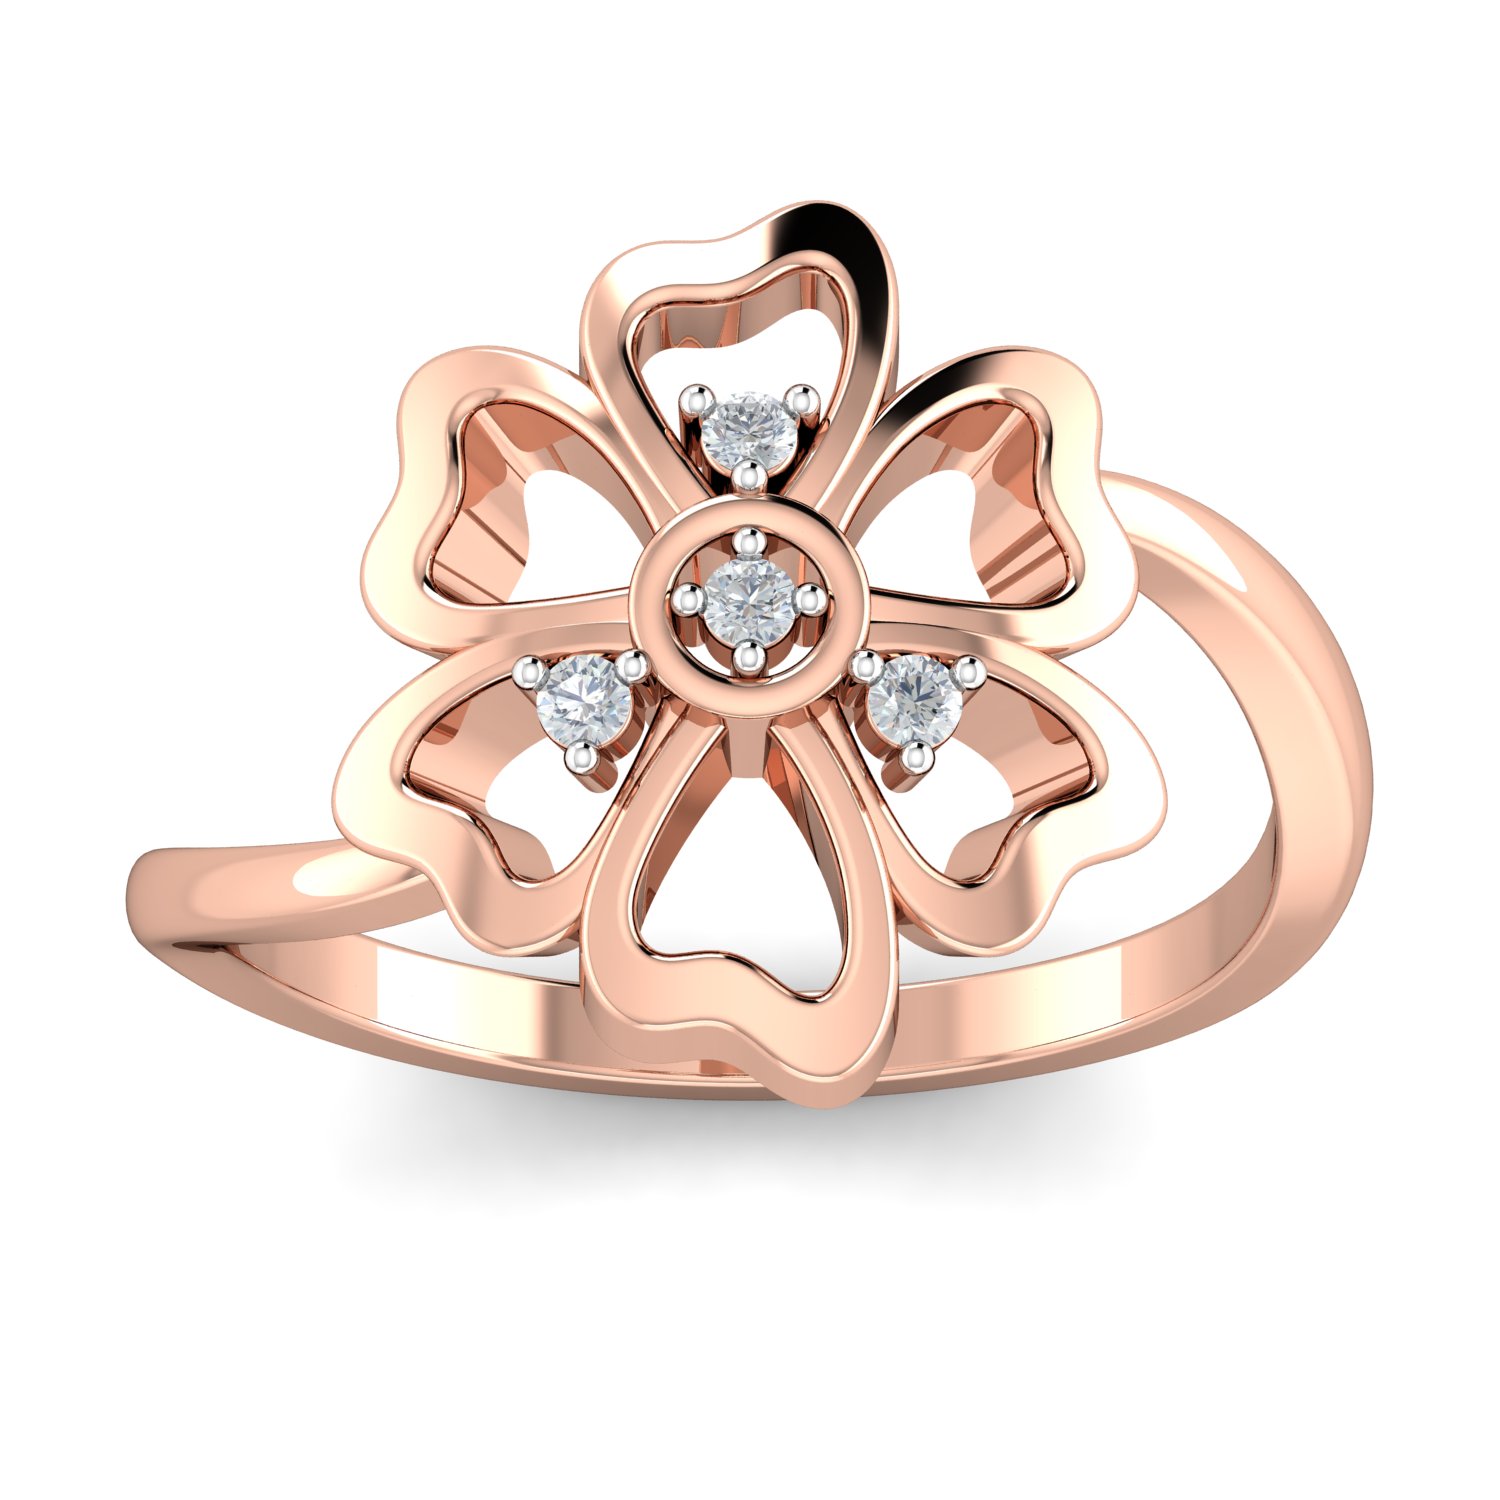 Element ring in Bronze – Chikahisa Studio